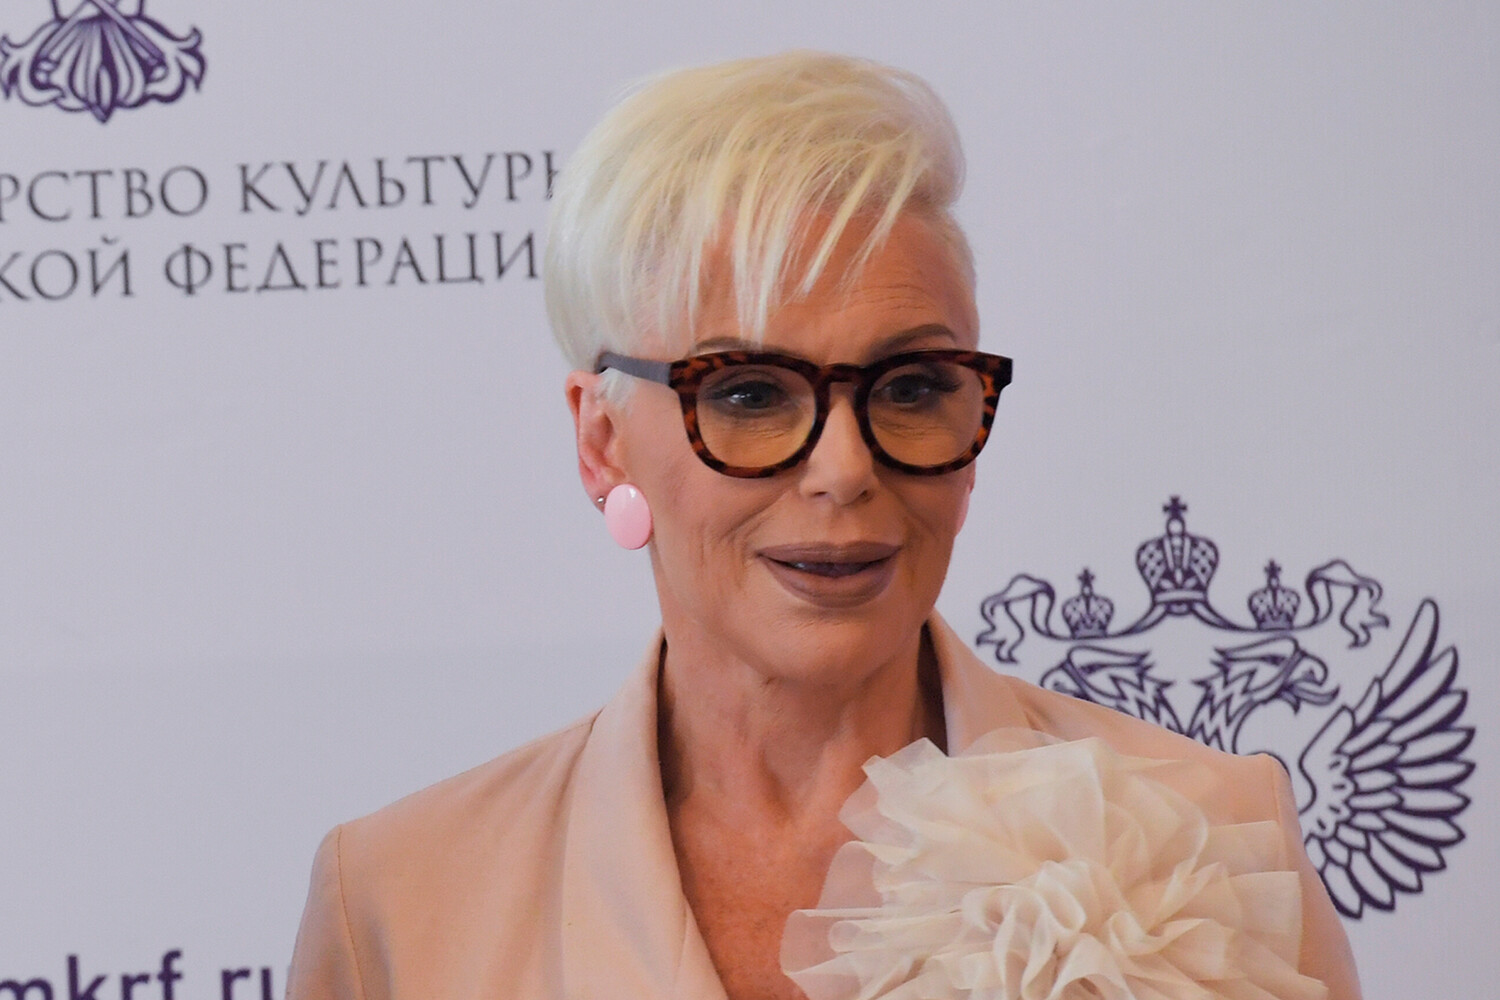 Певица Ирина Понаровская рассказала, что у нее отказали почки из-за диет